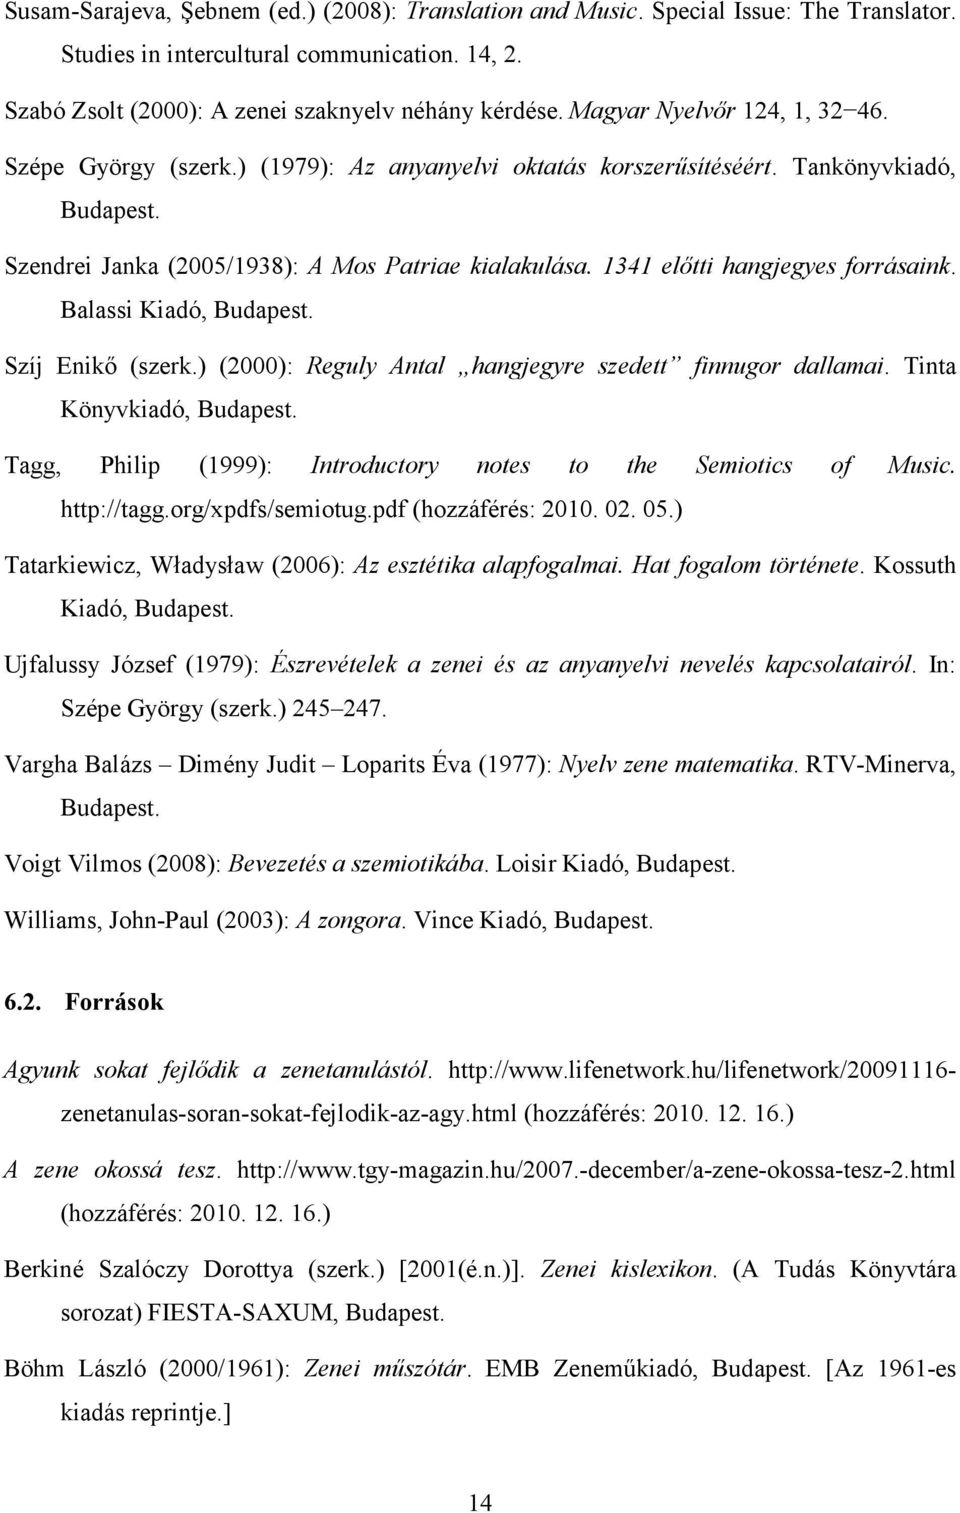 1341 előtti hangjegyes forrásaink. Balassi Kiadó, Szíj Enikő (szerk.) (2000): Reguly Antal hangjegyre szedett finnugor dallamai.